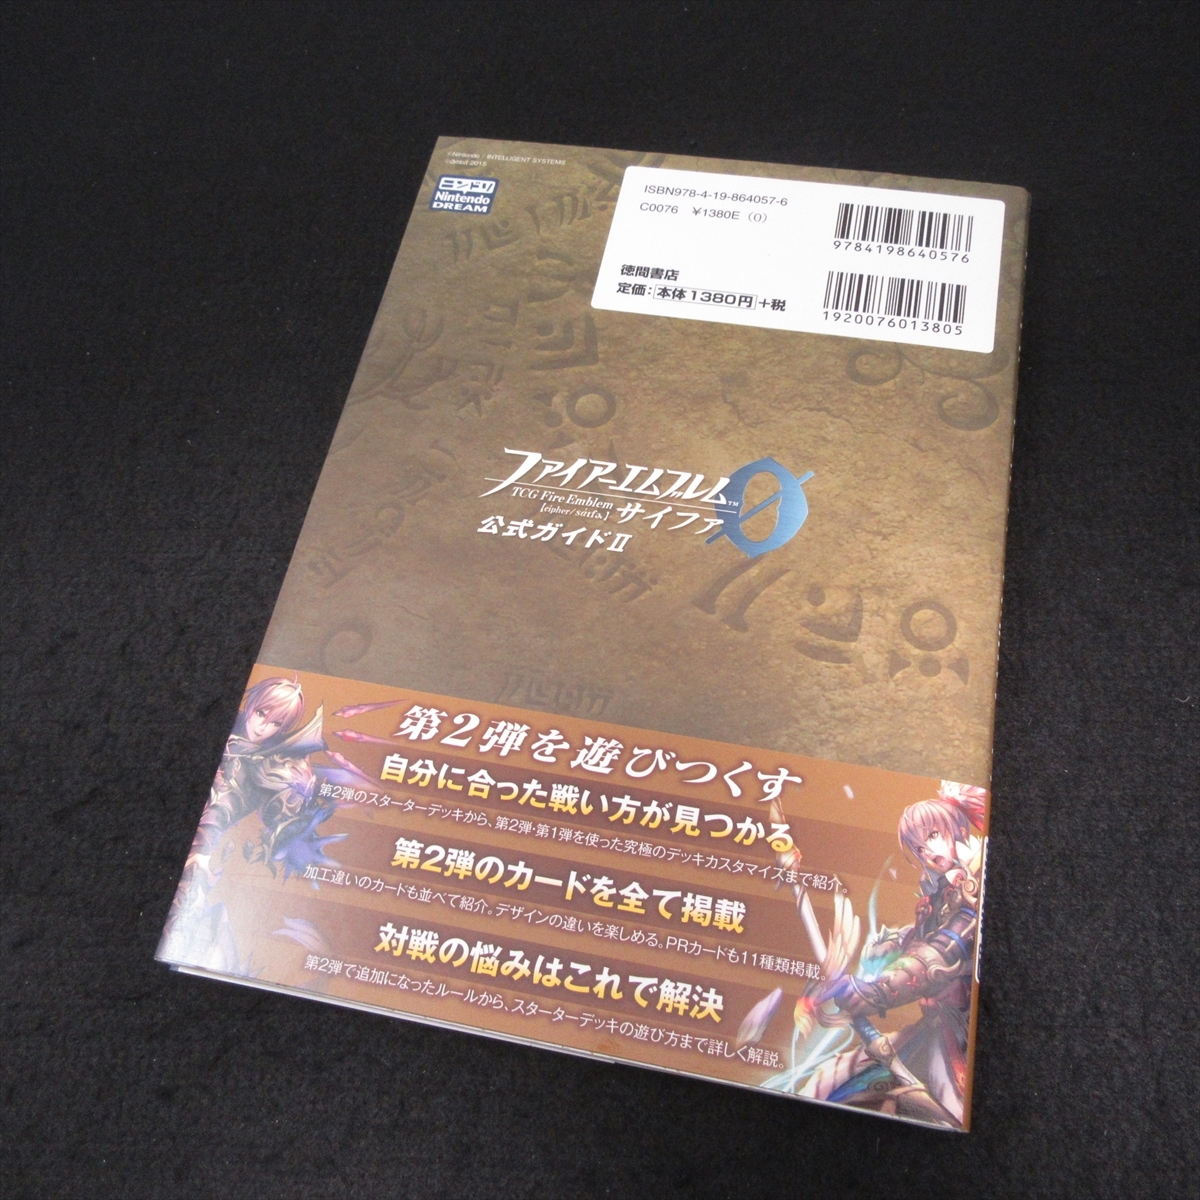 * дополнение карта отсутствует * с лентой 1.книга@[ Fire Emblem 0( Cypha ) официальный гид Ⅱ] # отправка 120 иен человек doli добродетель промежуток книжный магазин 0